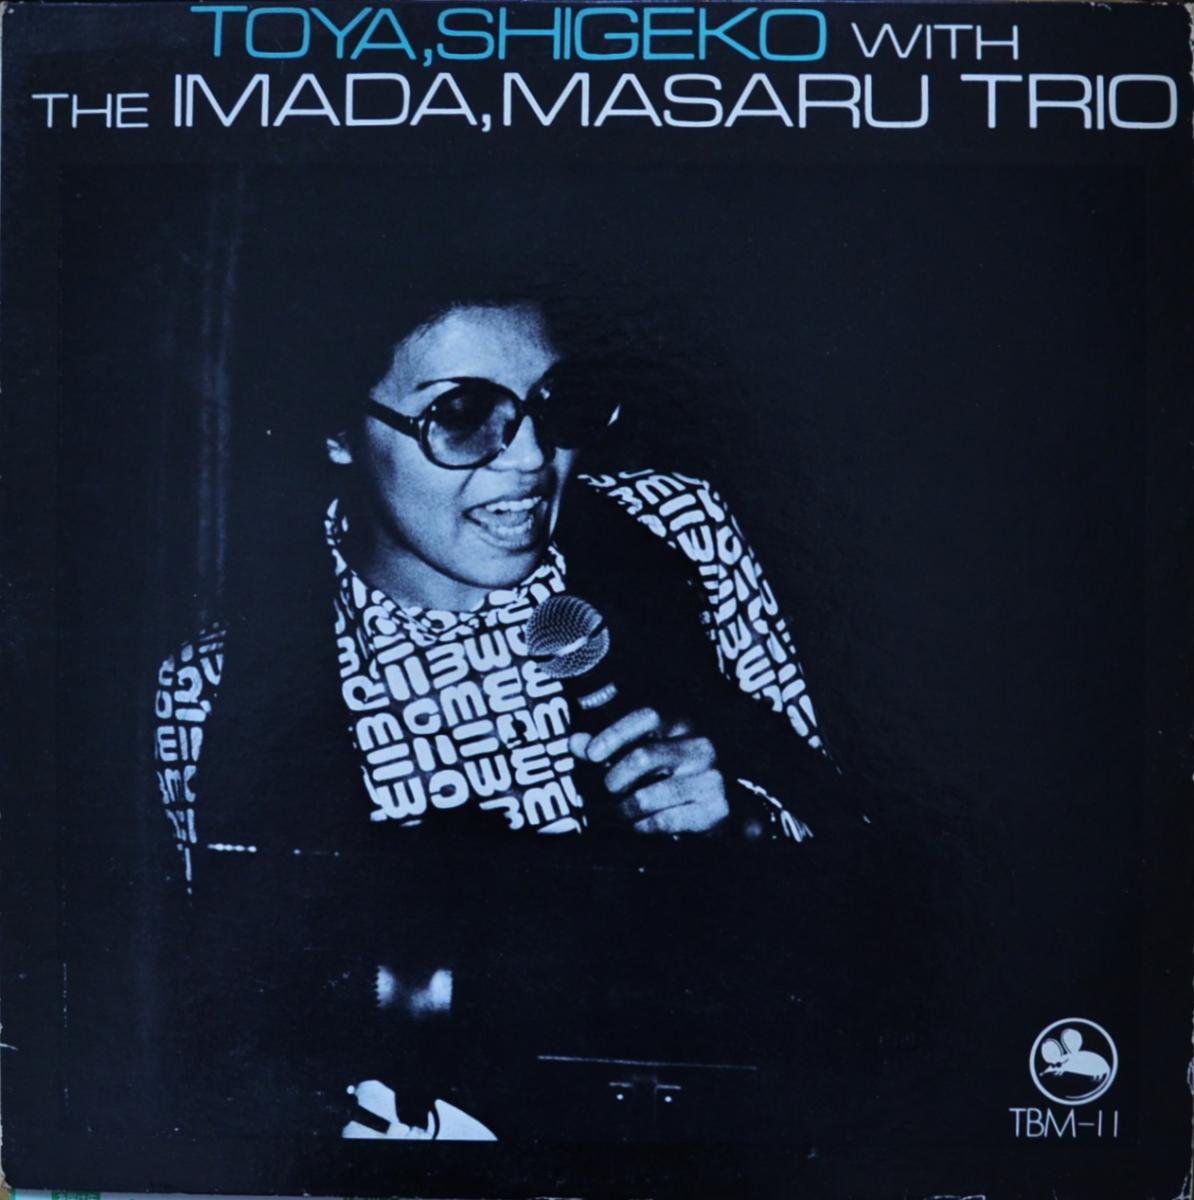 戸谷重子・ウィズ・ザ・今田勝トリオ / TOYA,SHIGEKO WITH THE IMADA,MASARU TRIO (LP)